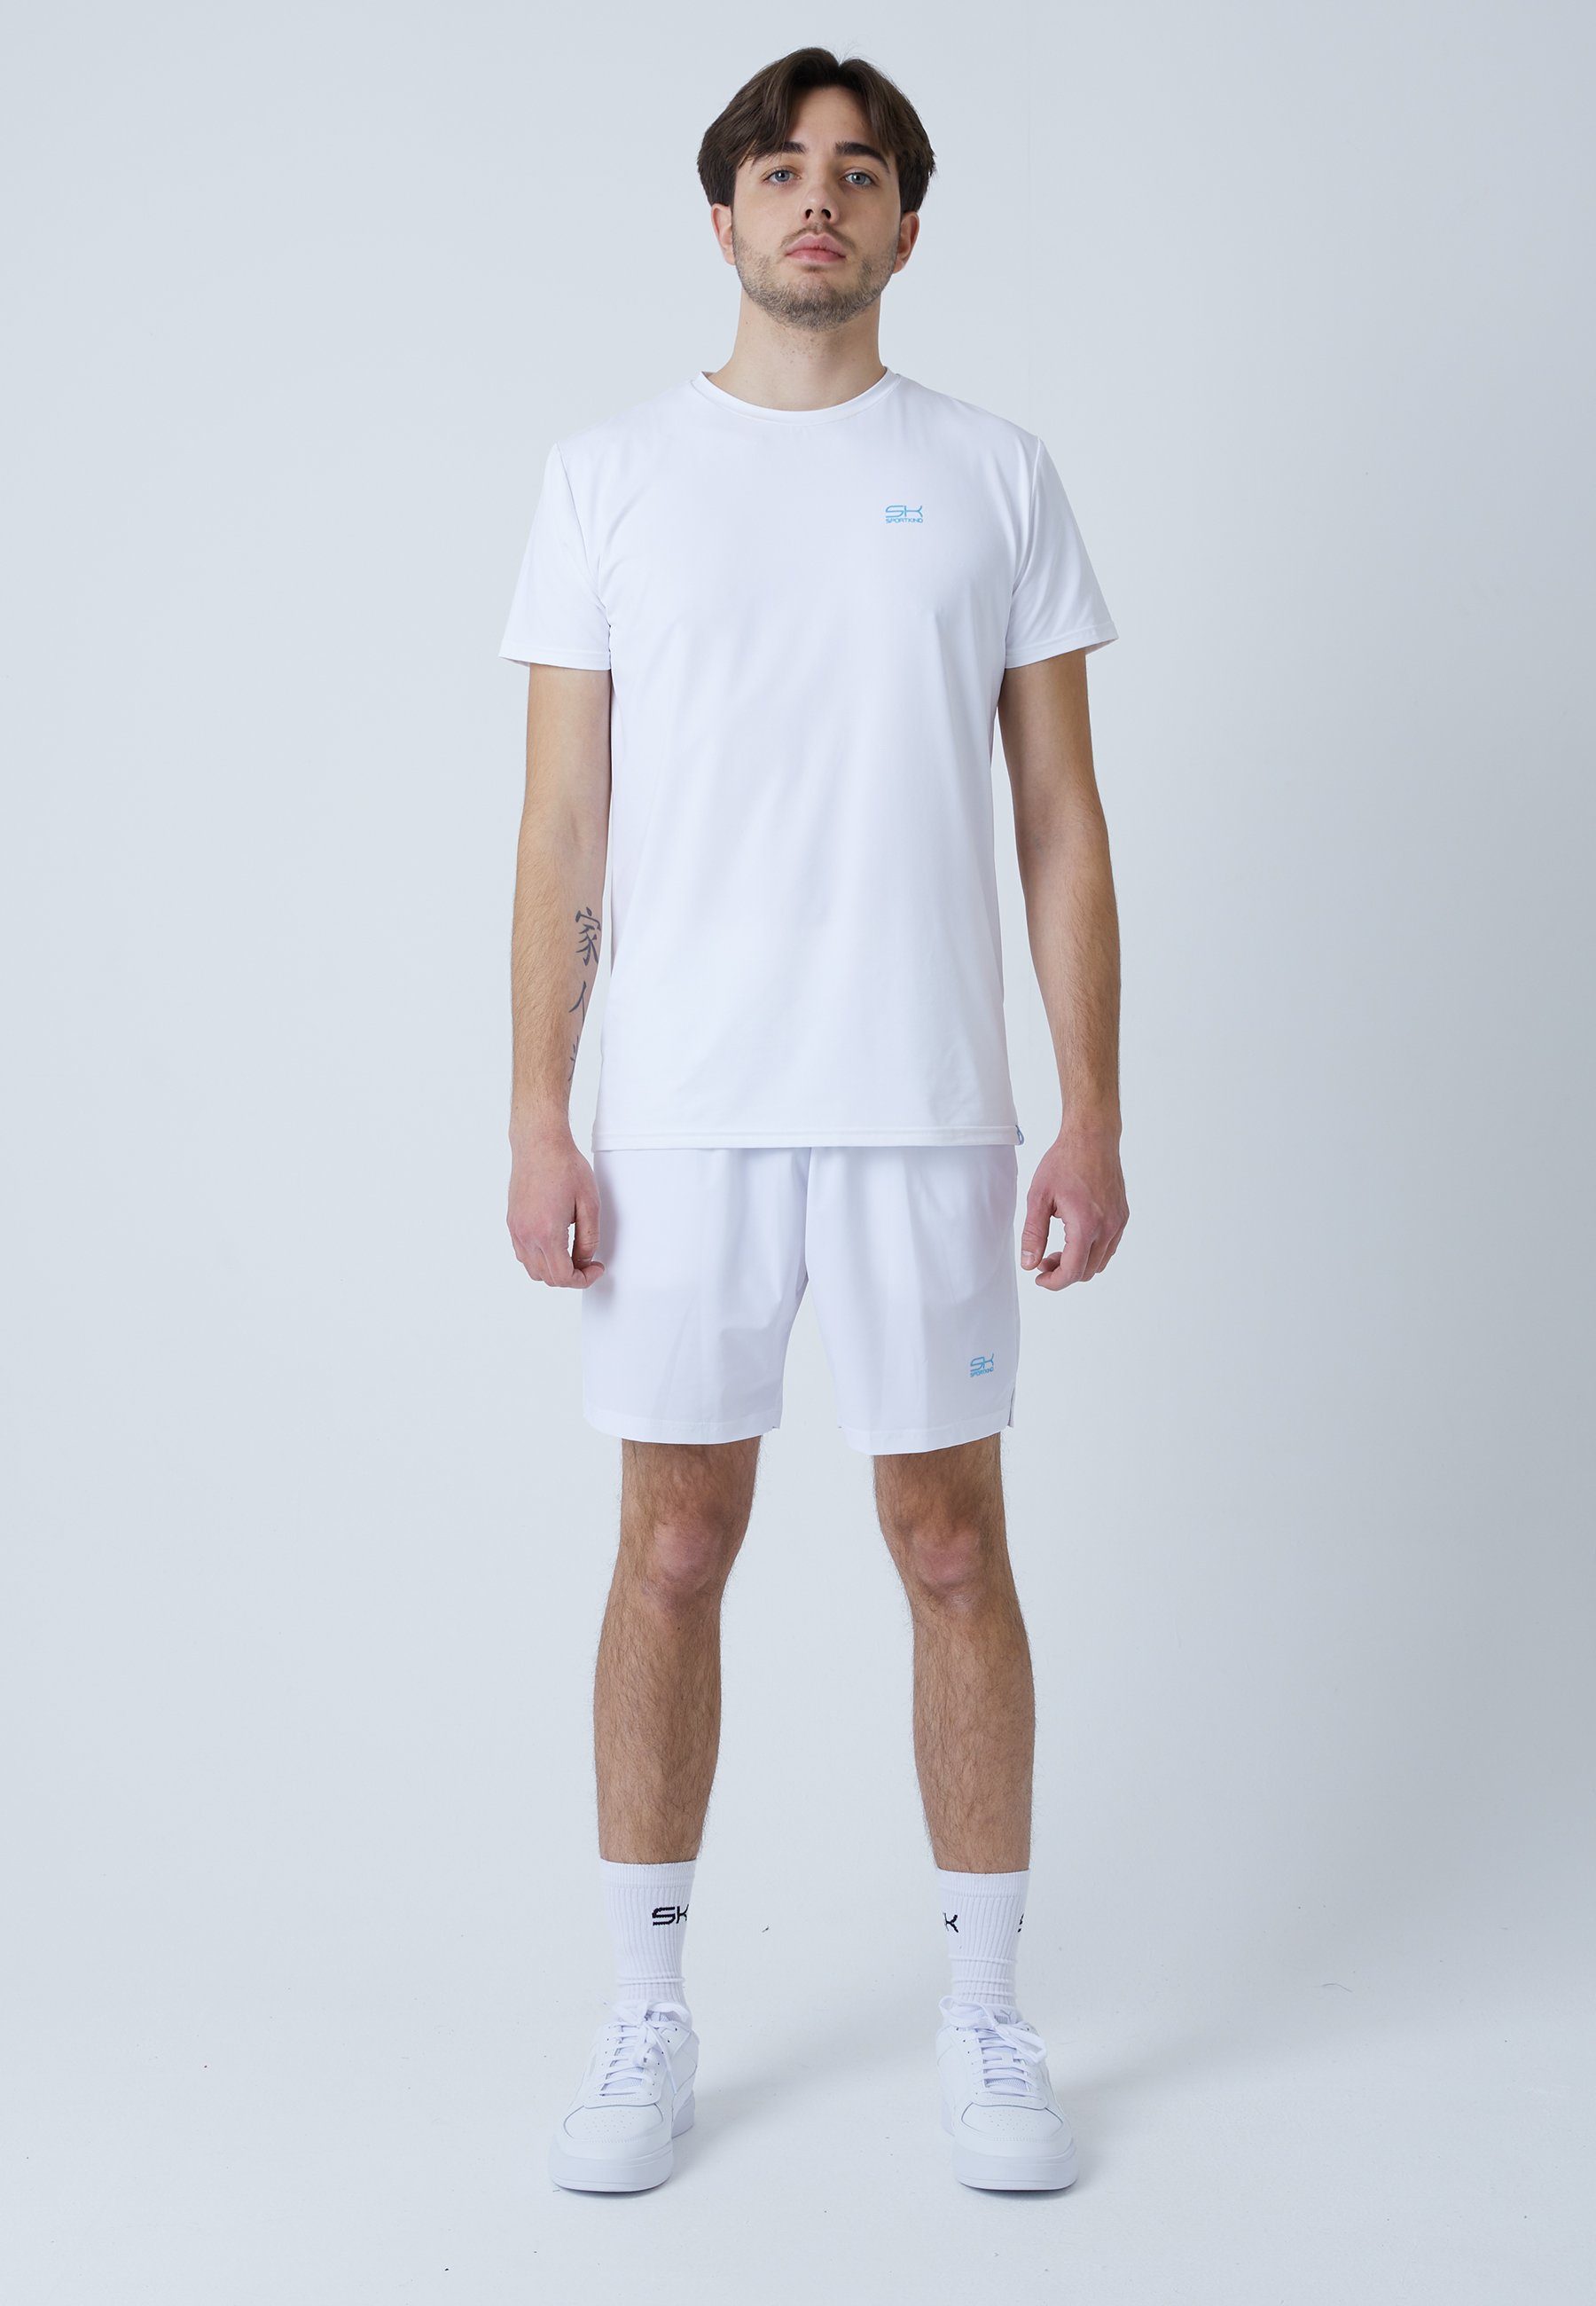 Funktionsshirt weiß Tennis & SPORTKIND Rundhals T-Shirt Jungen Herren